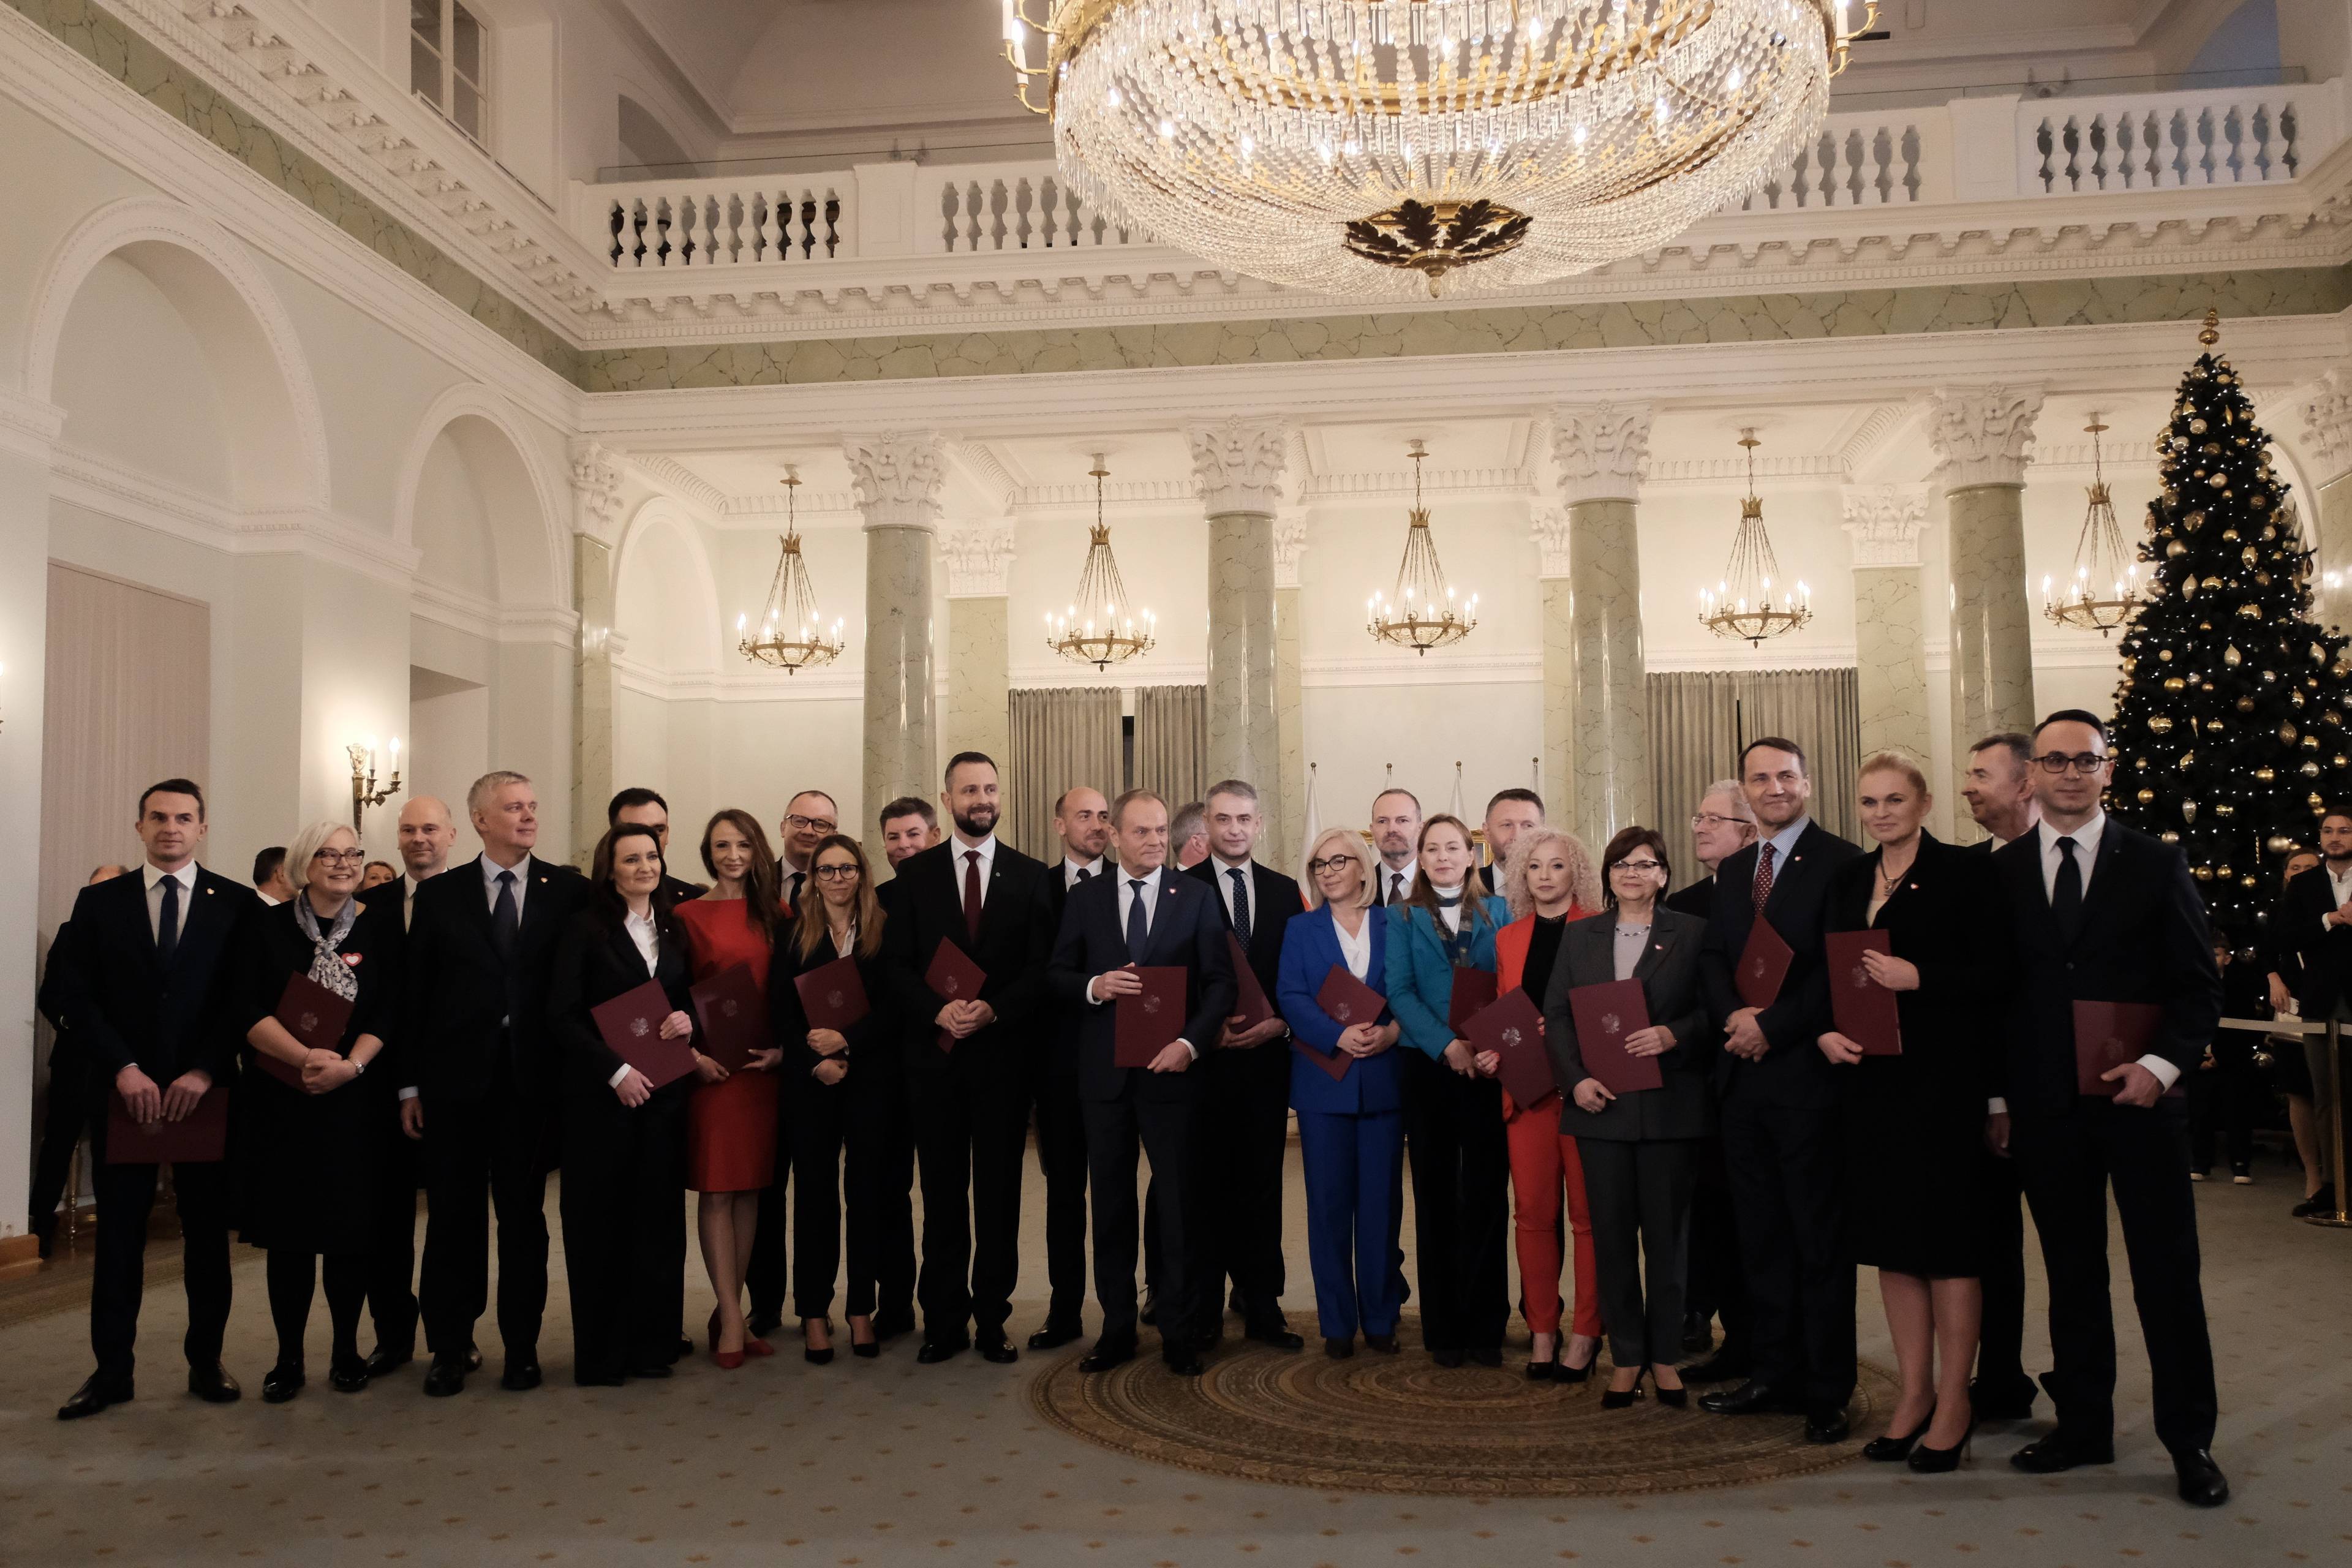 Rząd Tuska: grupowe zdjęcie kobiet i męzczyzn pod zyrandolem w pałacu prezydenckim